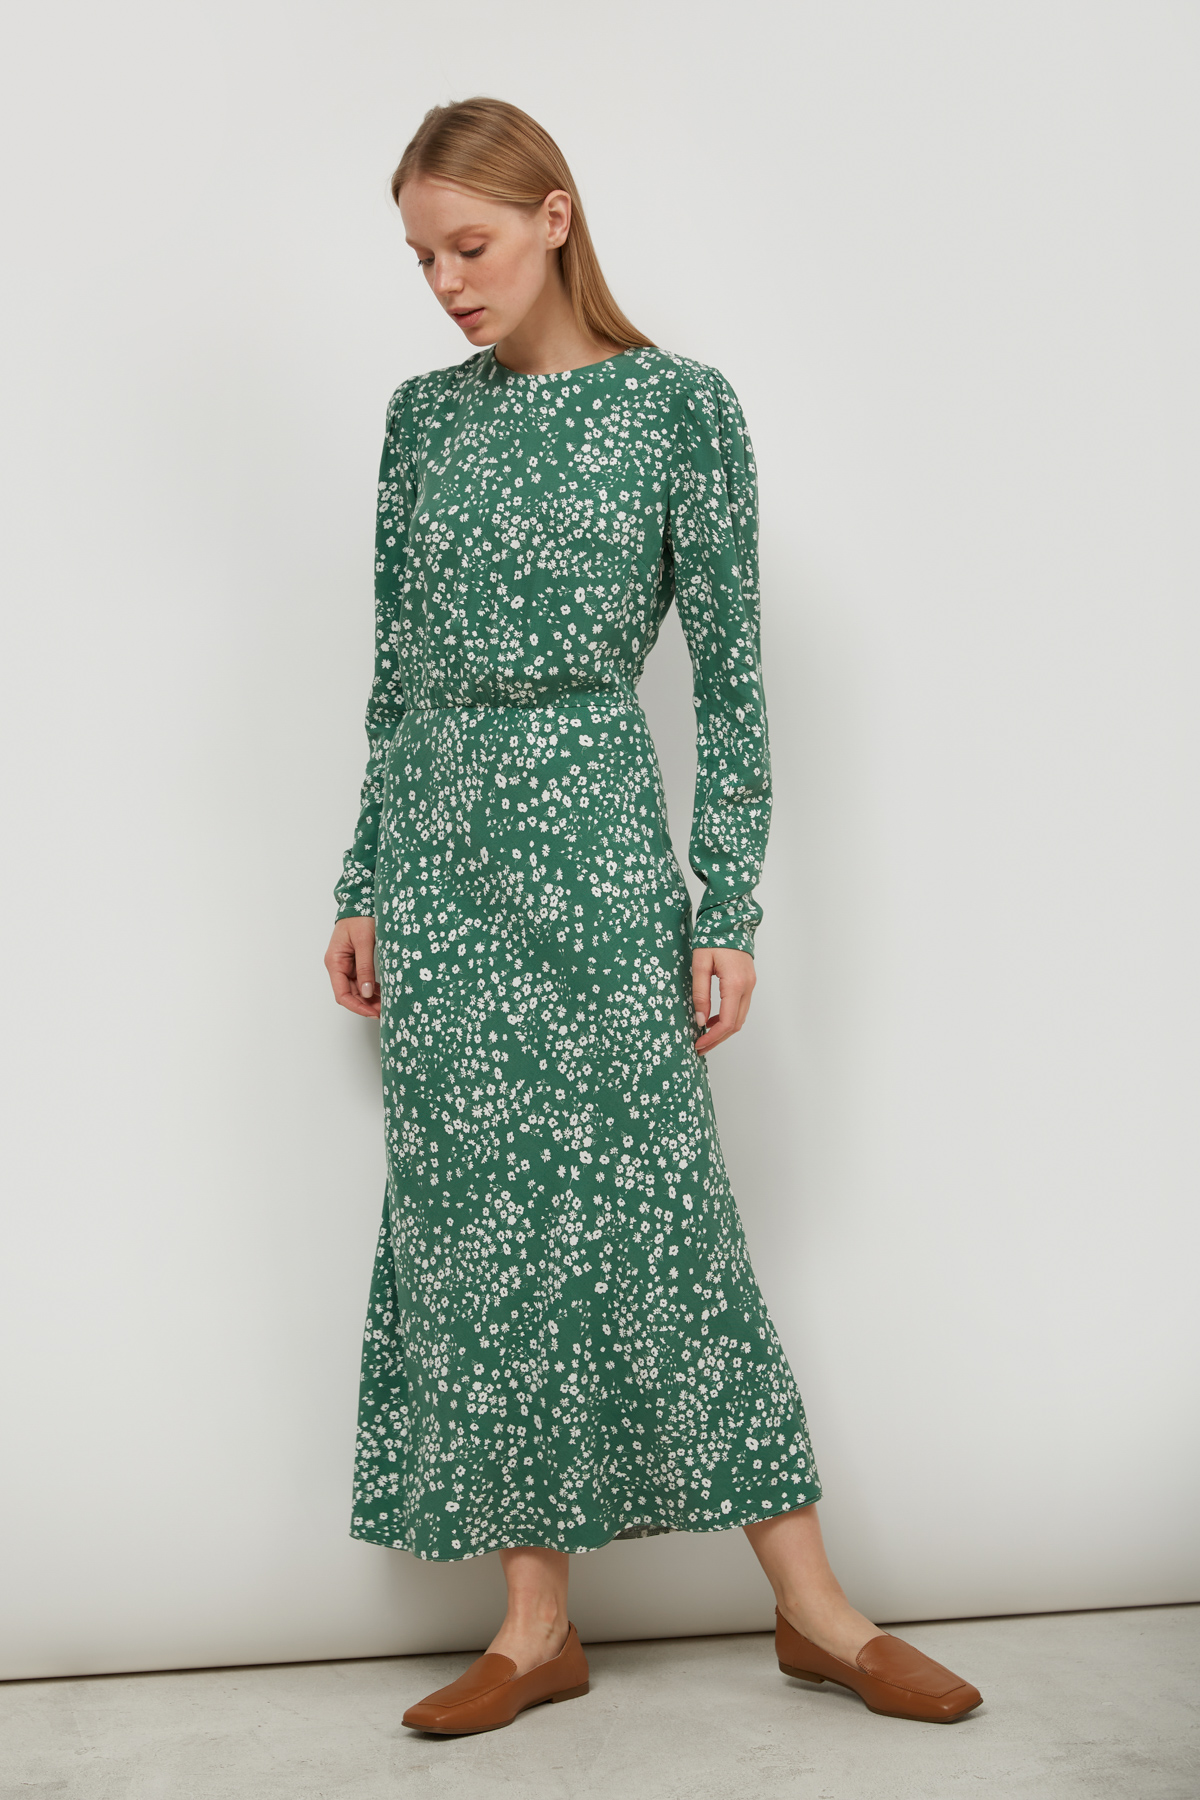 Сукня з віскози зелена в принт квіти, фото 2